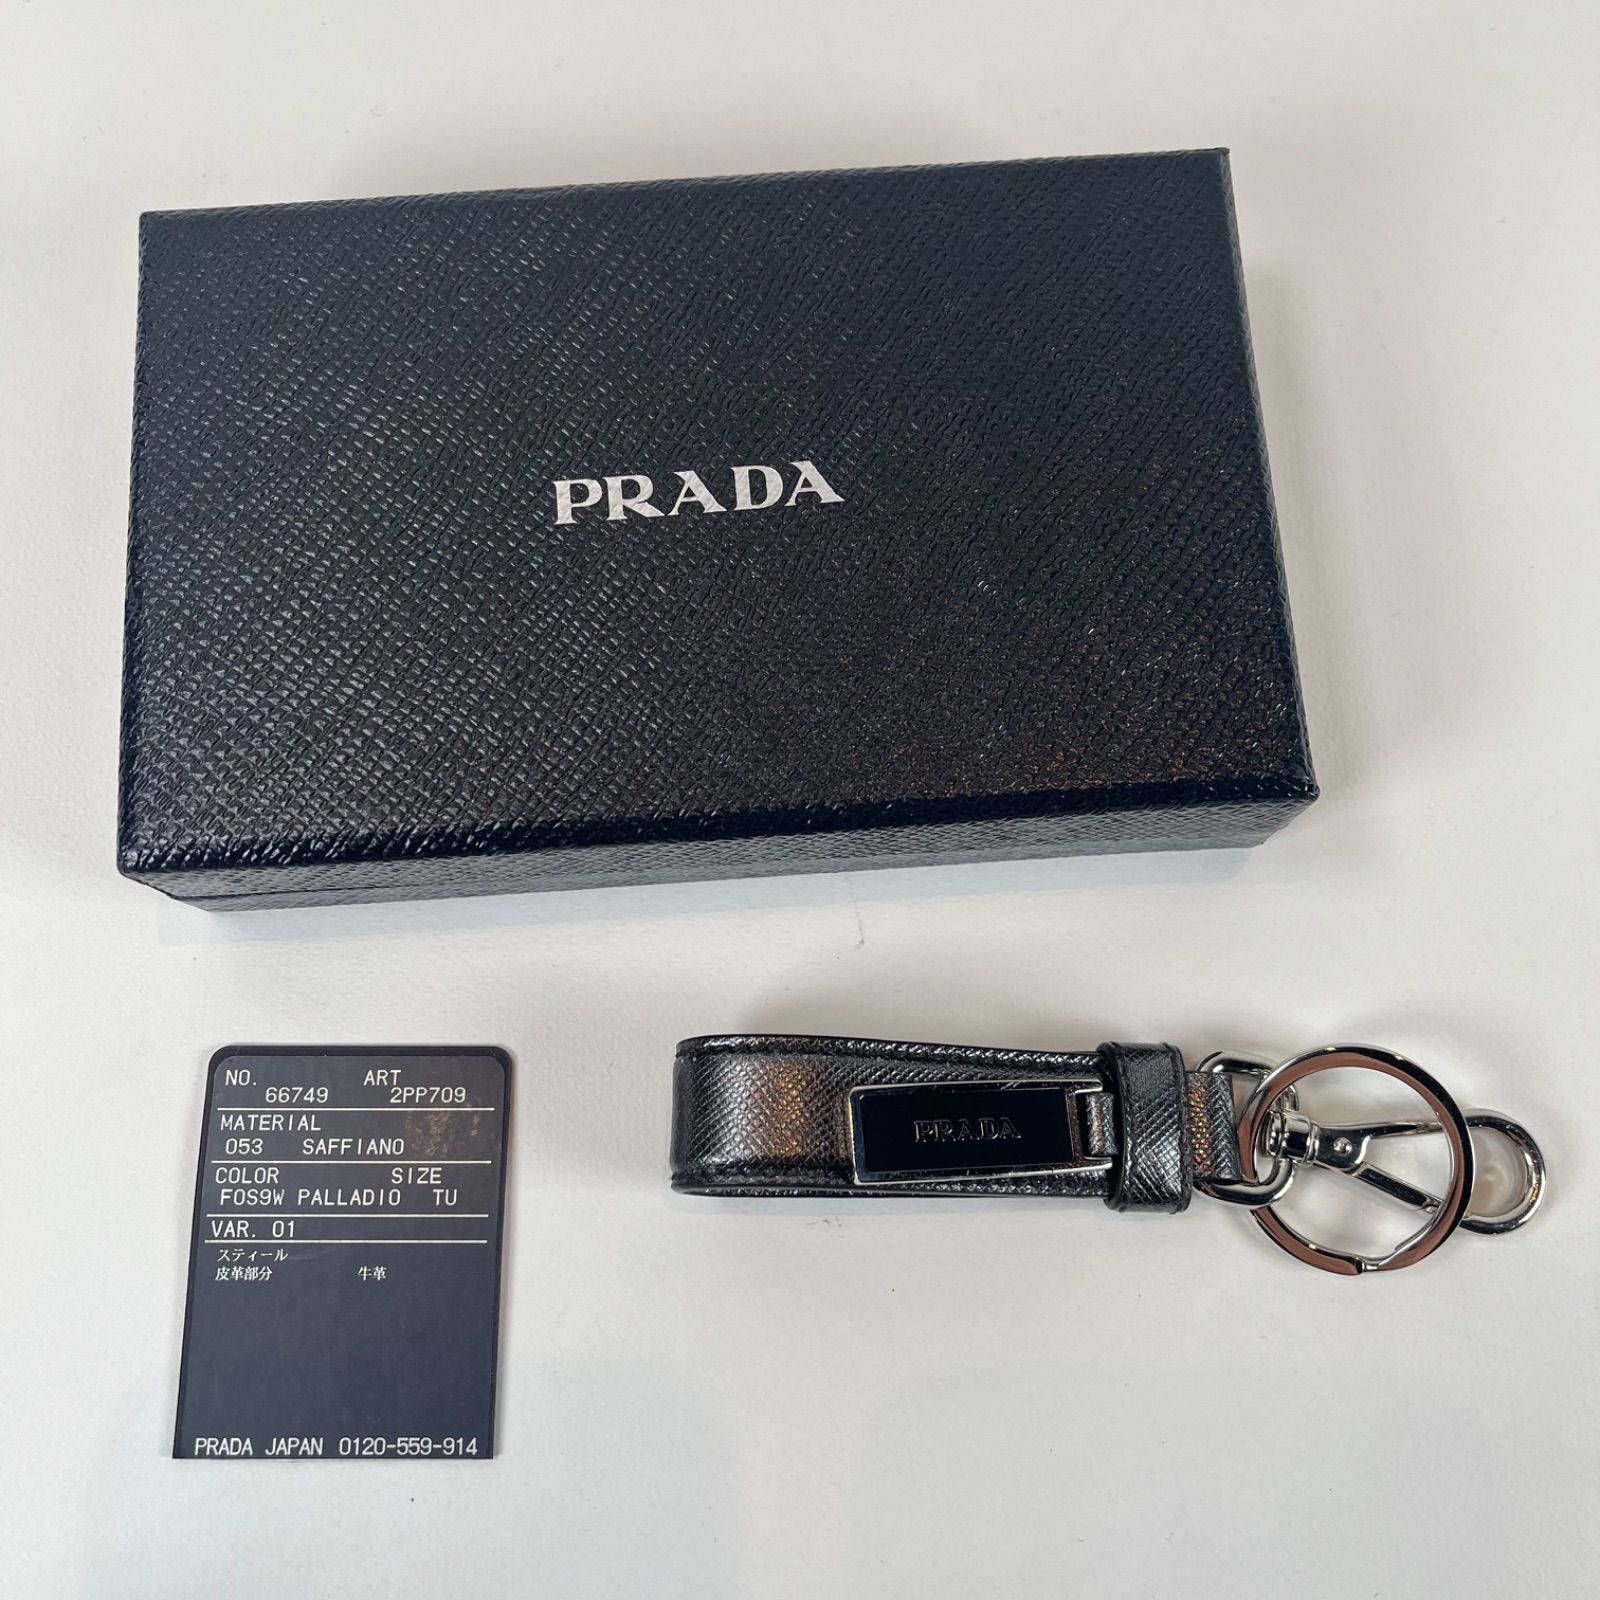 プラダ PRADA キーリング 2PP709 ブラック メンズ レディース